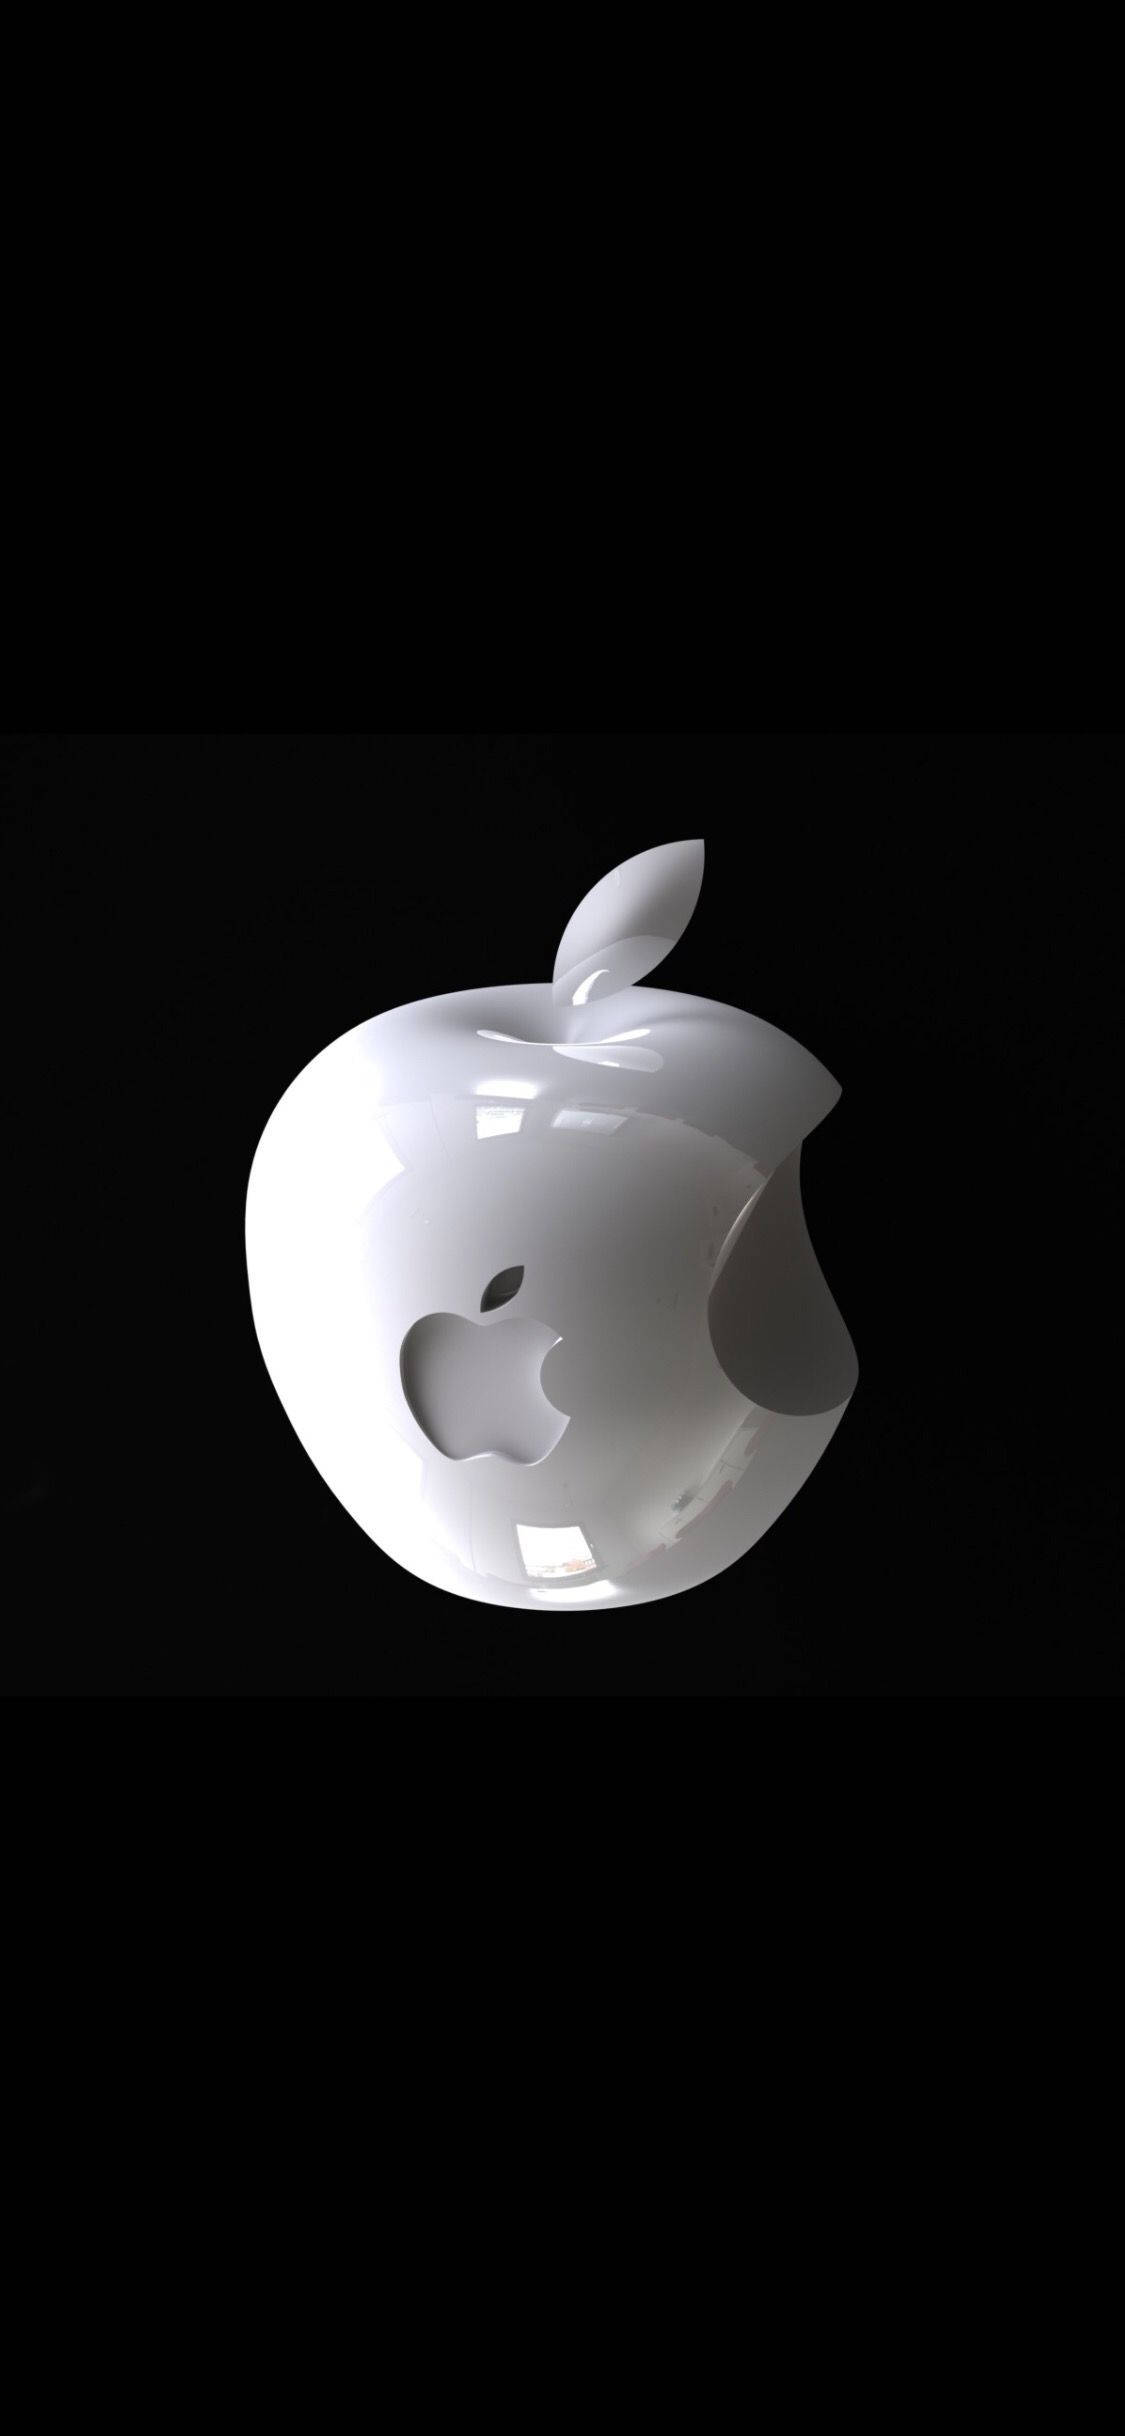 3d iphone с белым логотипом apple